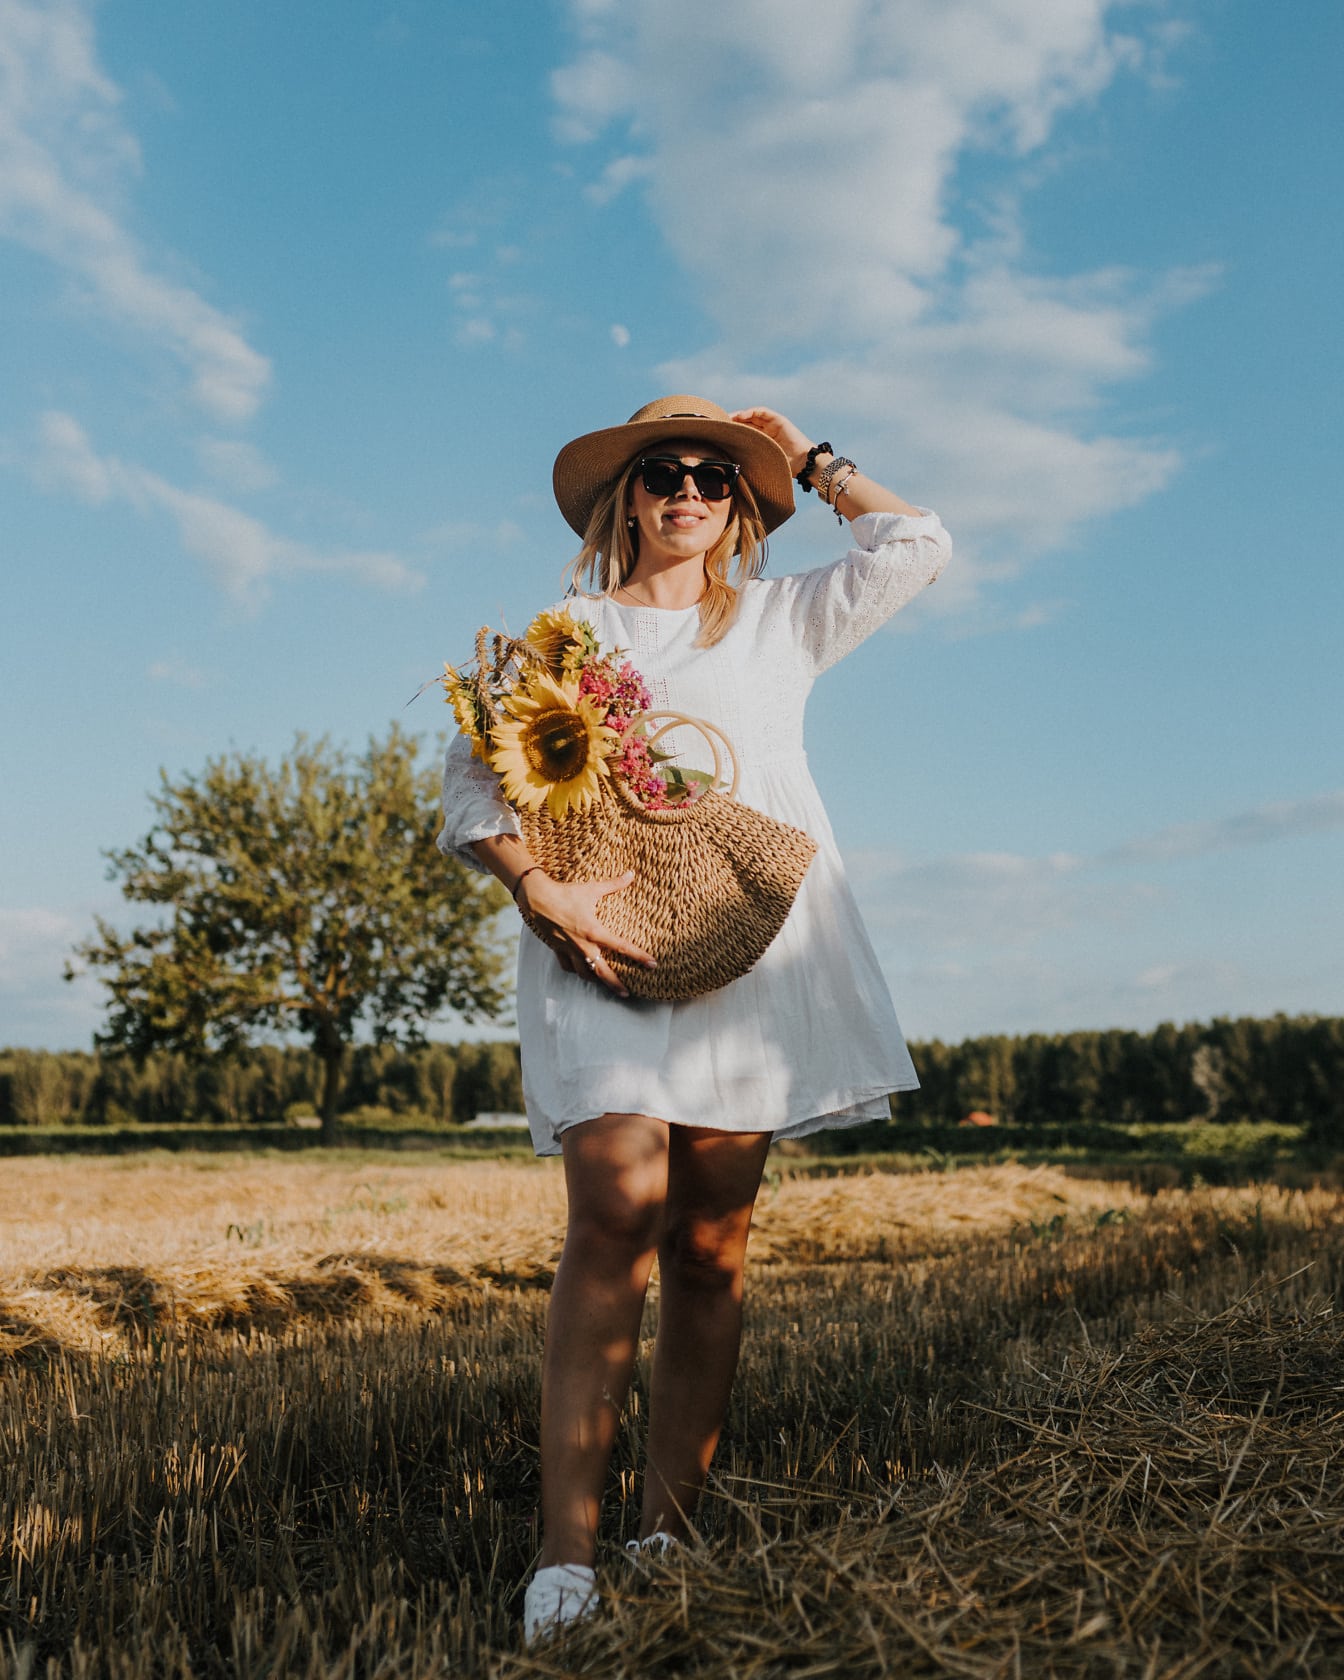 Nádherný fotomodel s proutěným košem a slaměným kloboukem v pšeničném poli